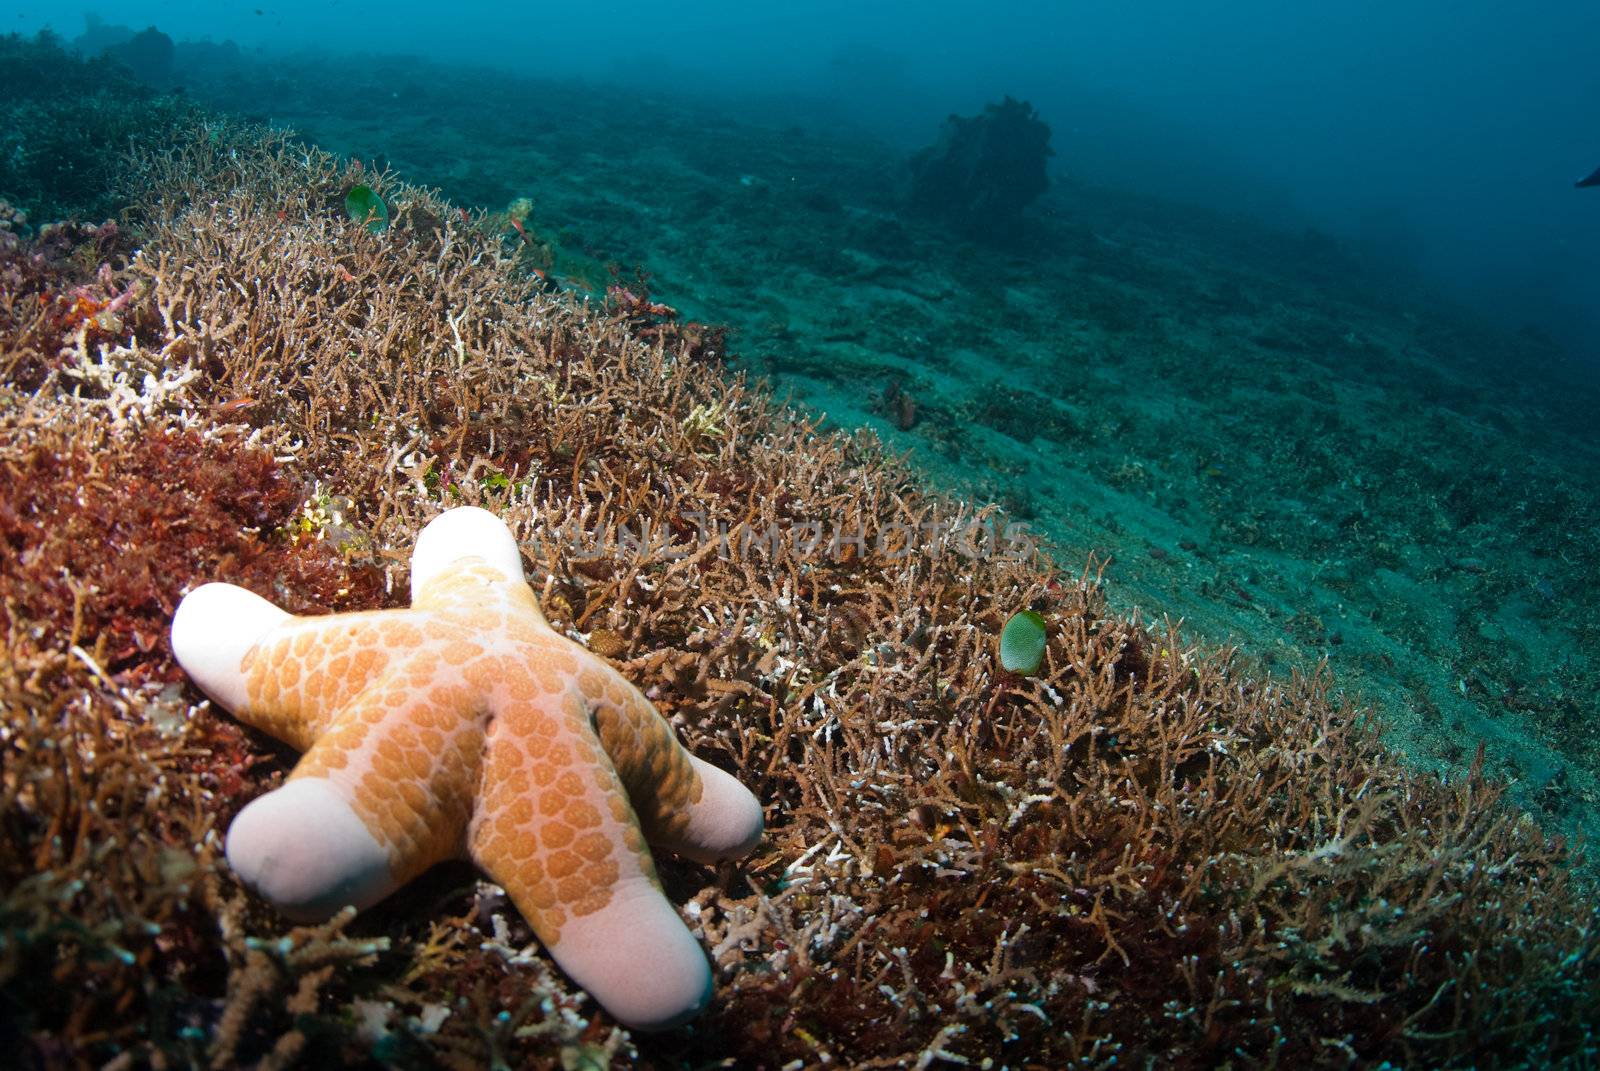 Starfish underwater by edan